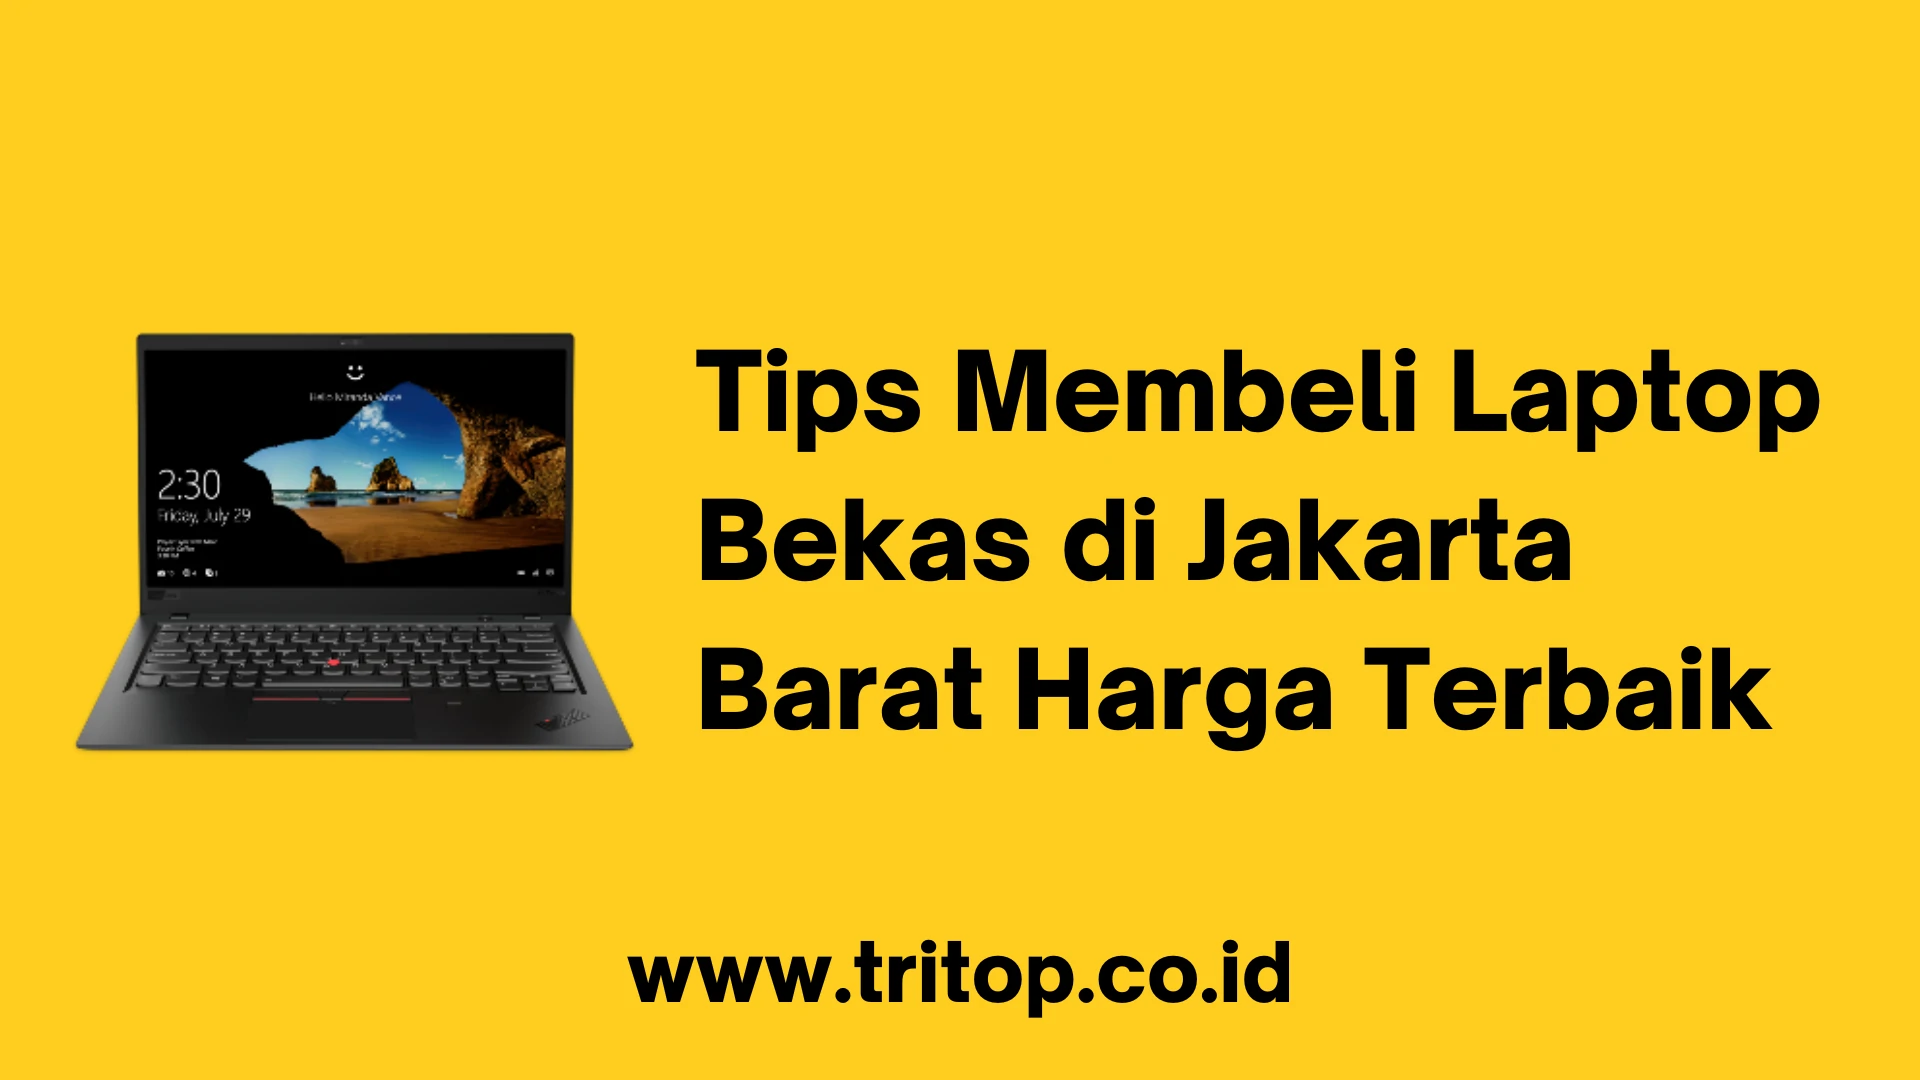 Laptop Bekas Jakarta Barat